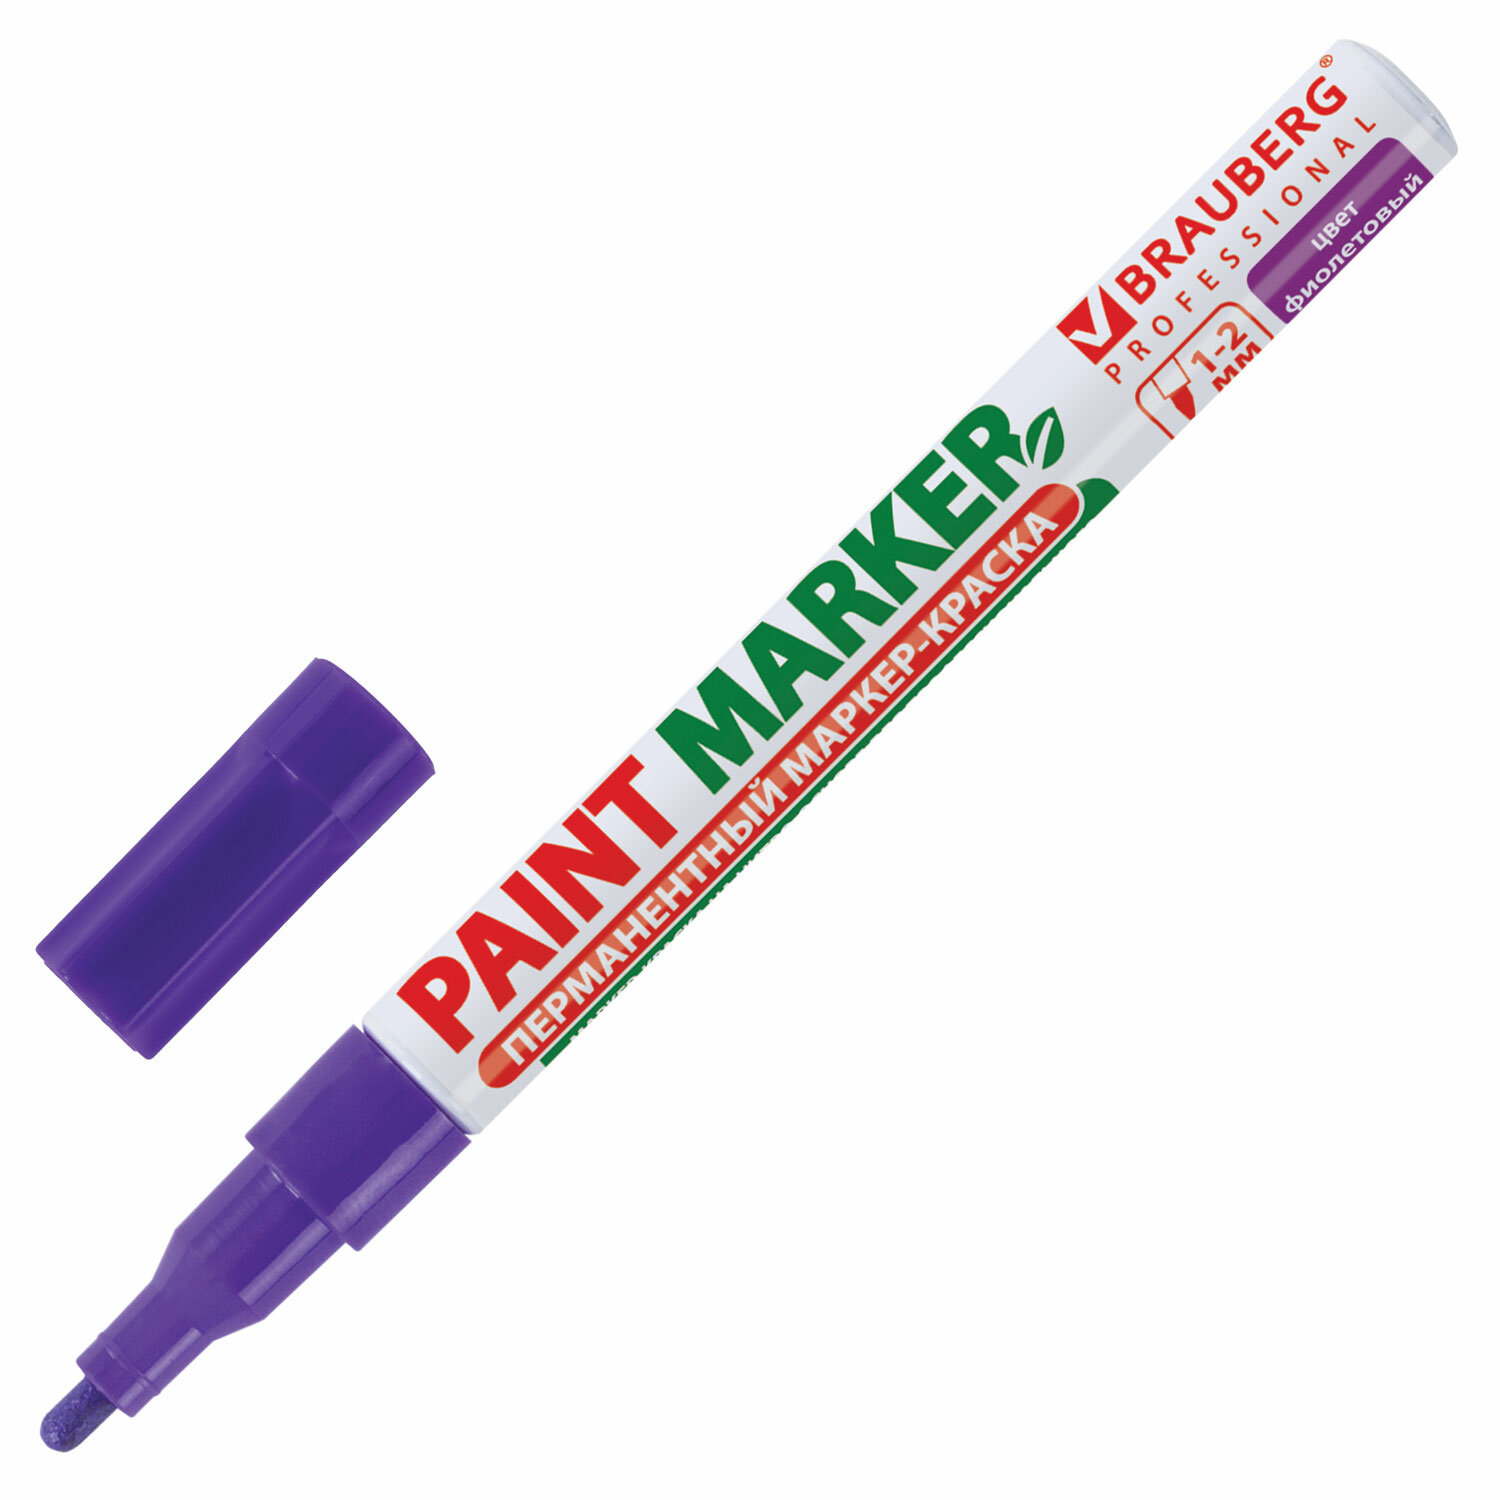 Маркер-краска лаковый Brauberg Professional 150871, 2мм, фиолетовый, 12шт маркер для электриков artline 0 4 1 0 мм electricians marker оранжевый ekpelft 197